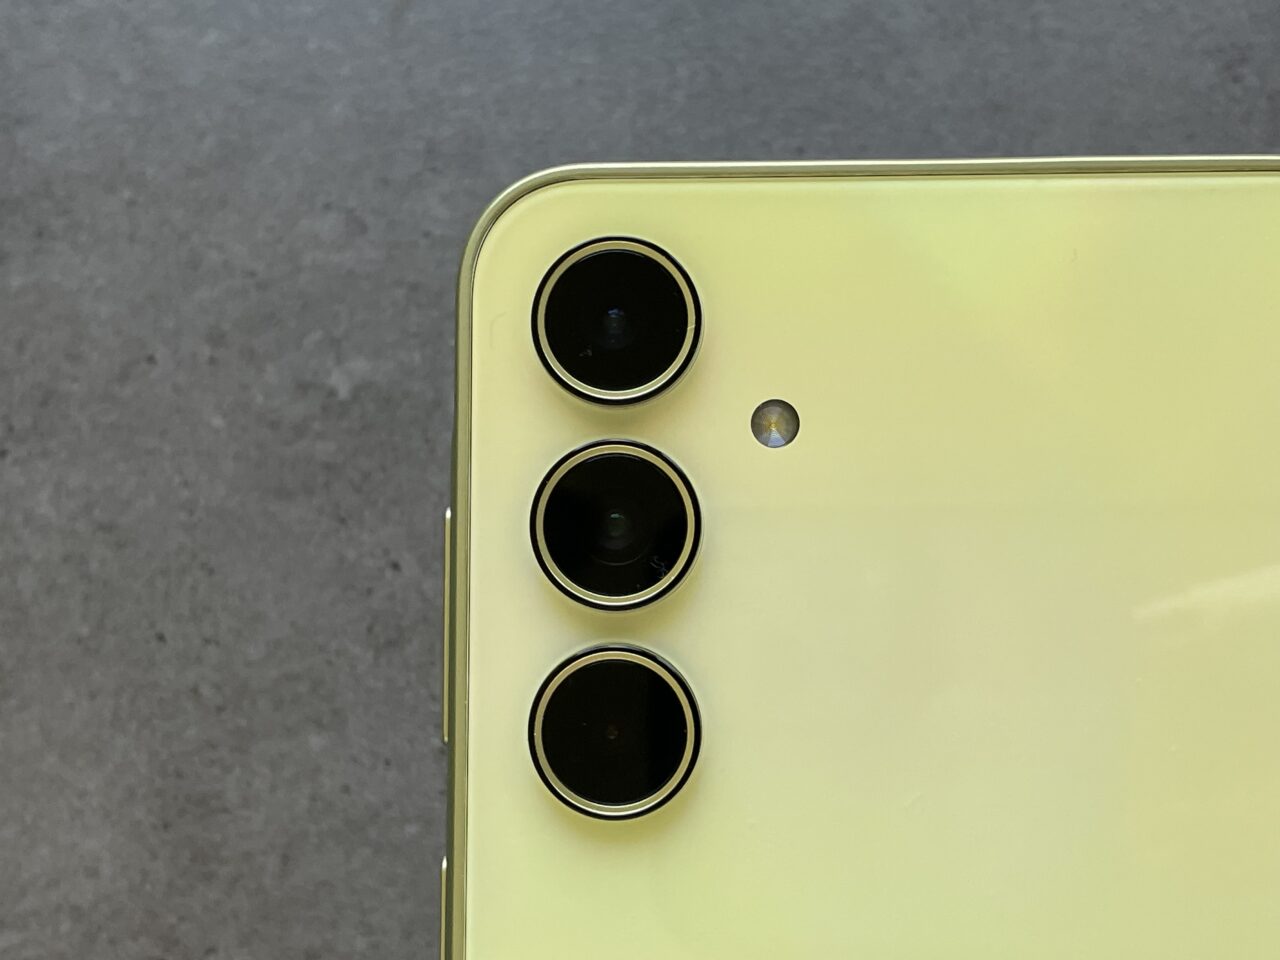 Tylna część żółtego smartfona z trzema obiektywami aparatu i błyskiem LED.